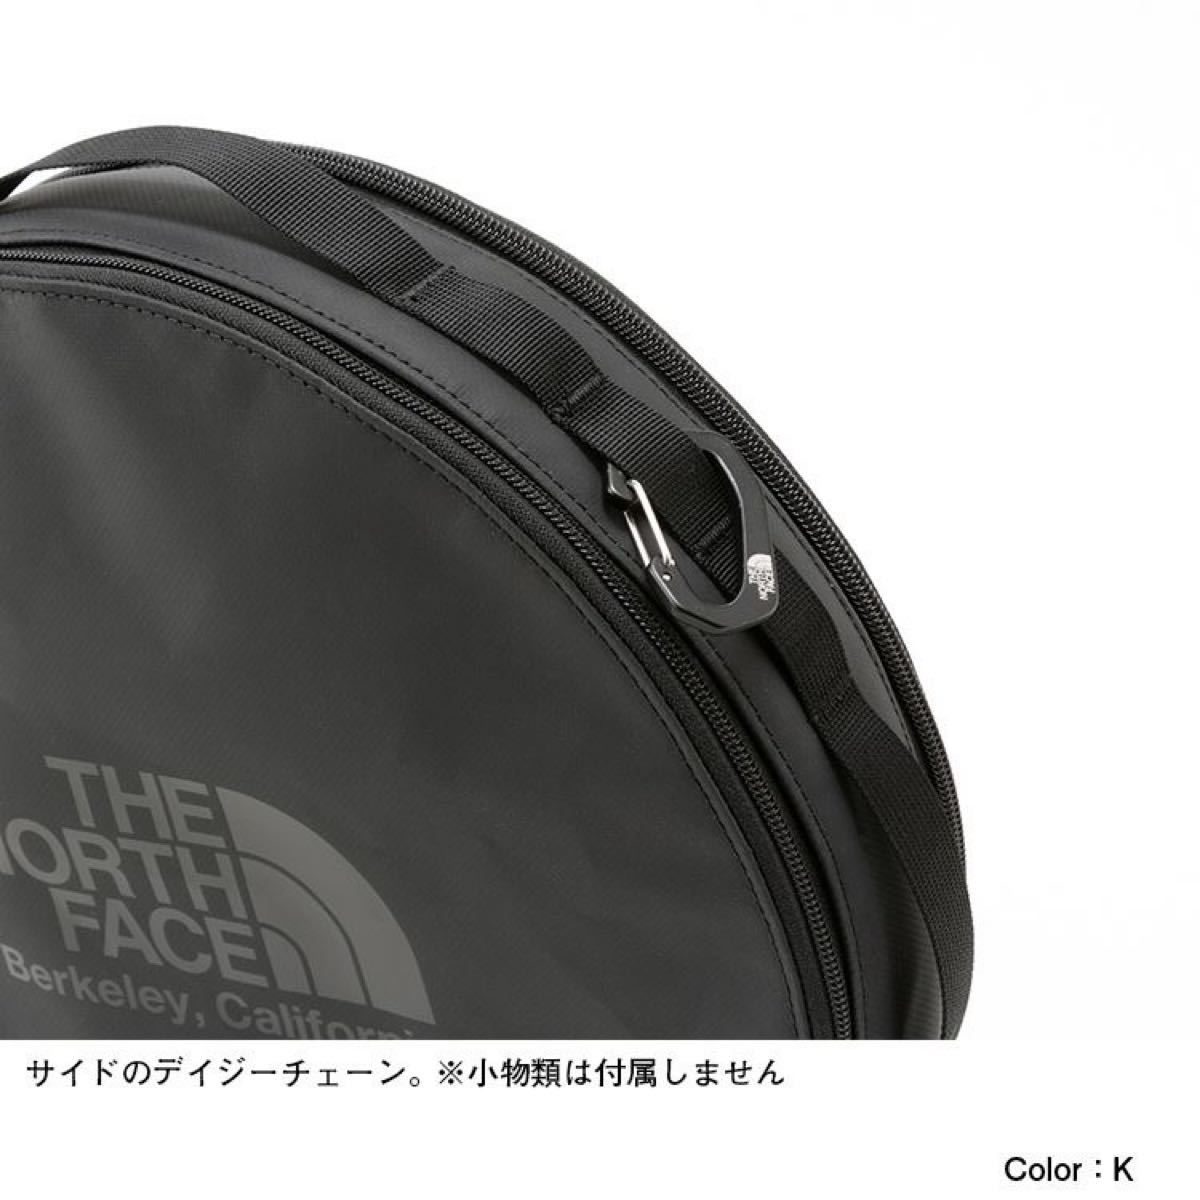 THE NORTH FACE ザノースフェイス BCラウンドキャニスター2 ブラック(黒) 新品